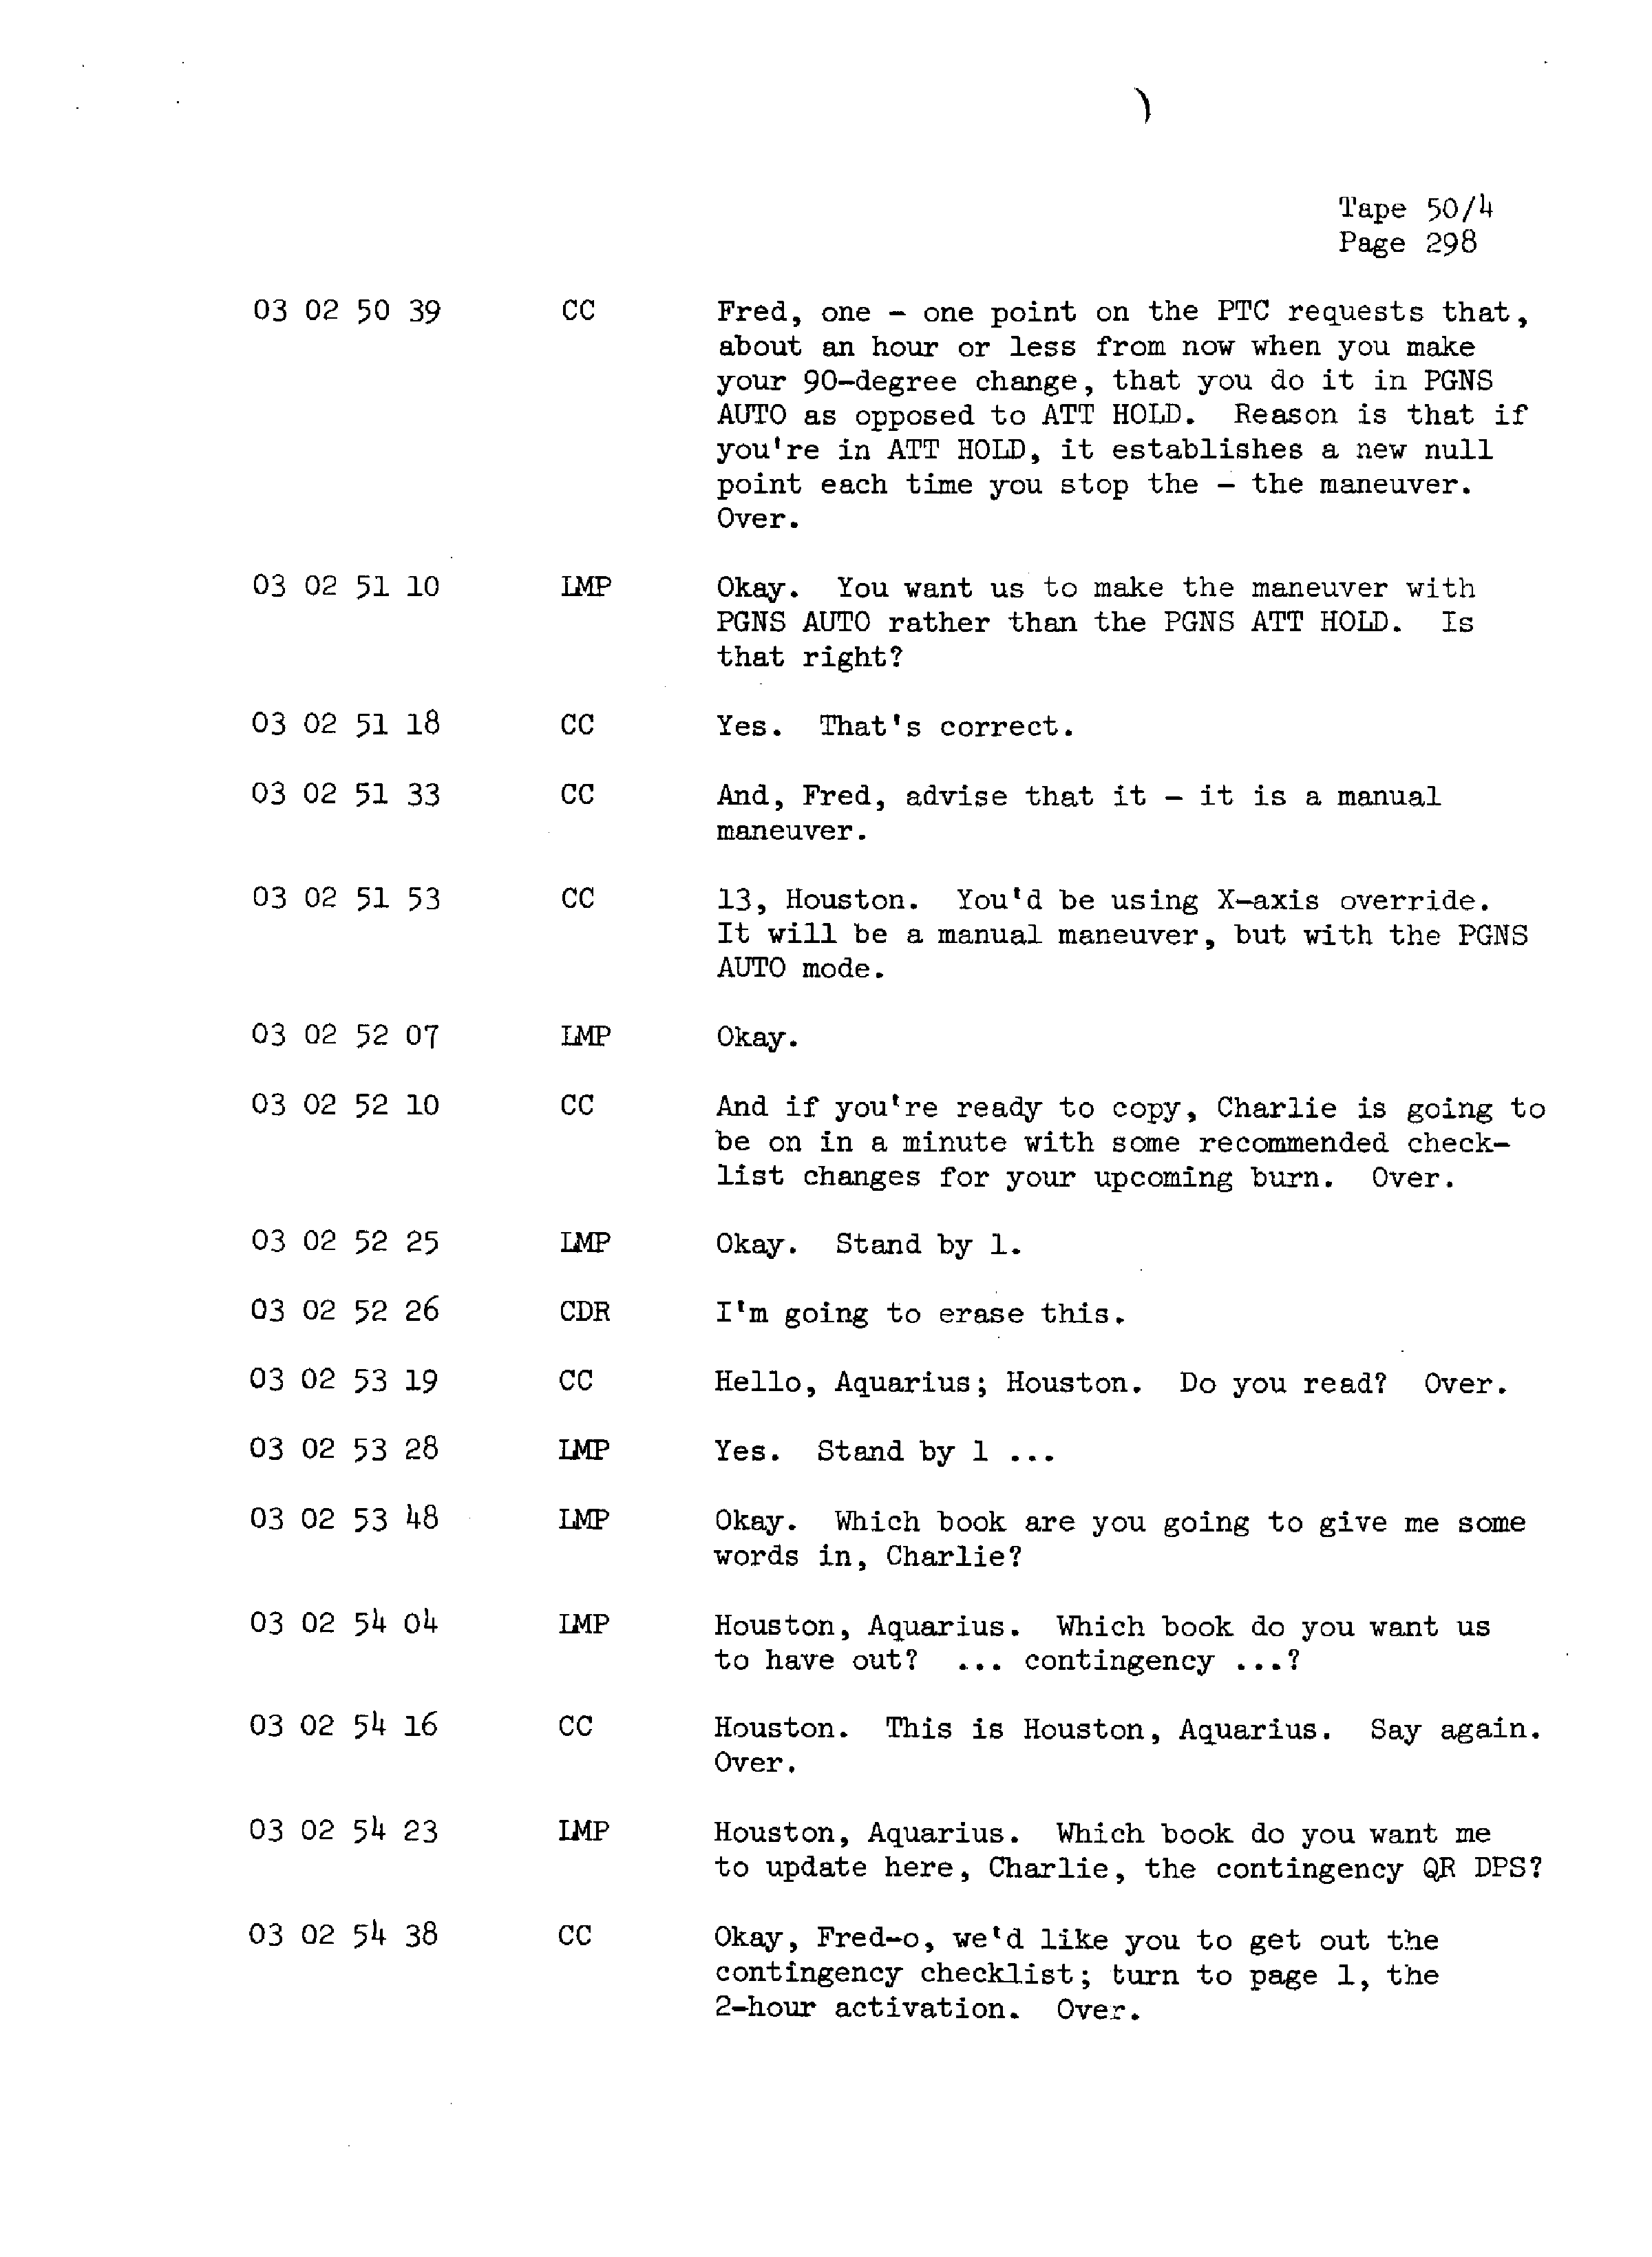 Page 305 of Apollo 13’s original transcript